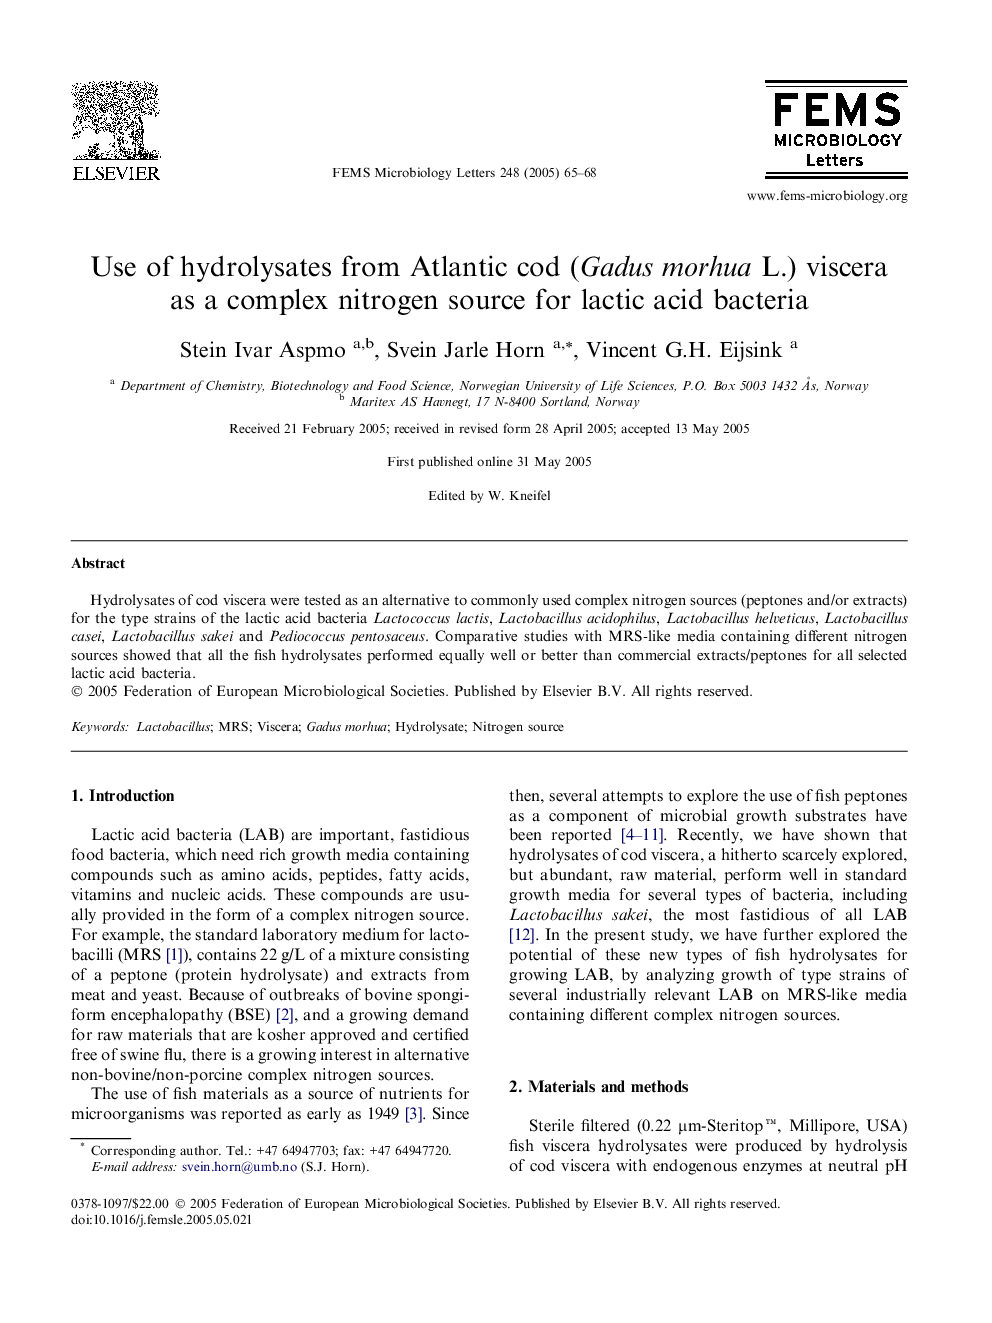 Use of hydrolysates from Atlantic cod (Gadus morhua L.) viscera as a complex nitrogen source for lactic acid bacteria